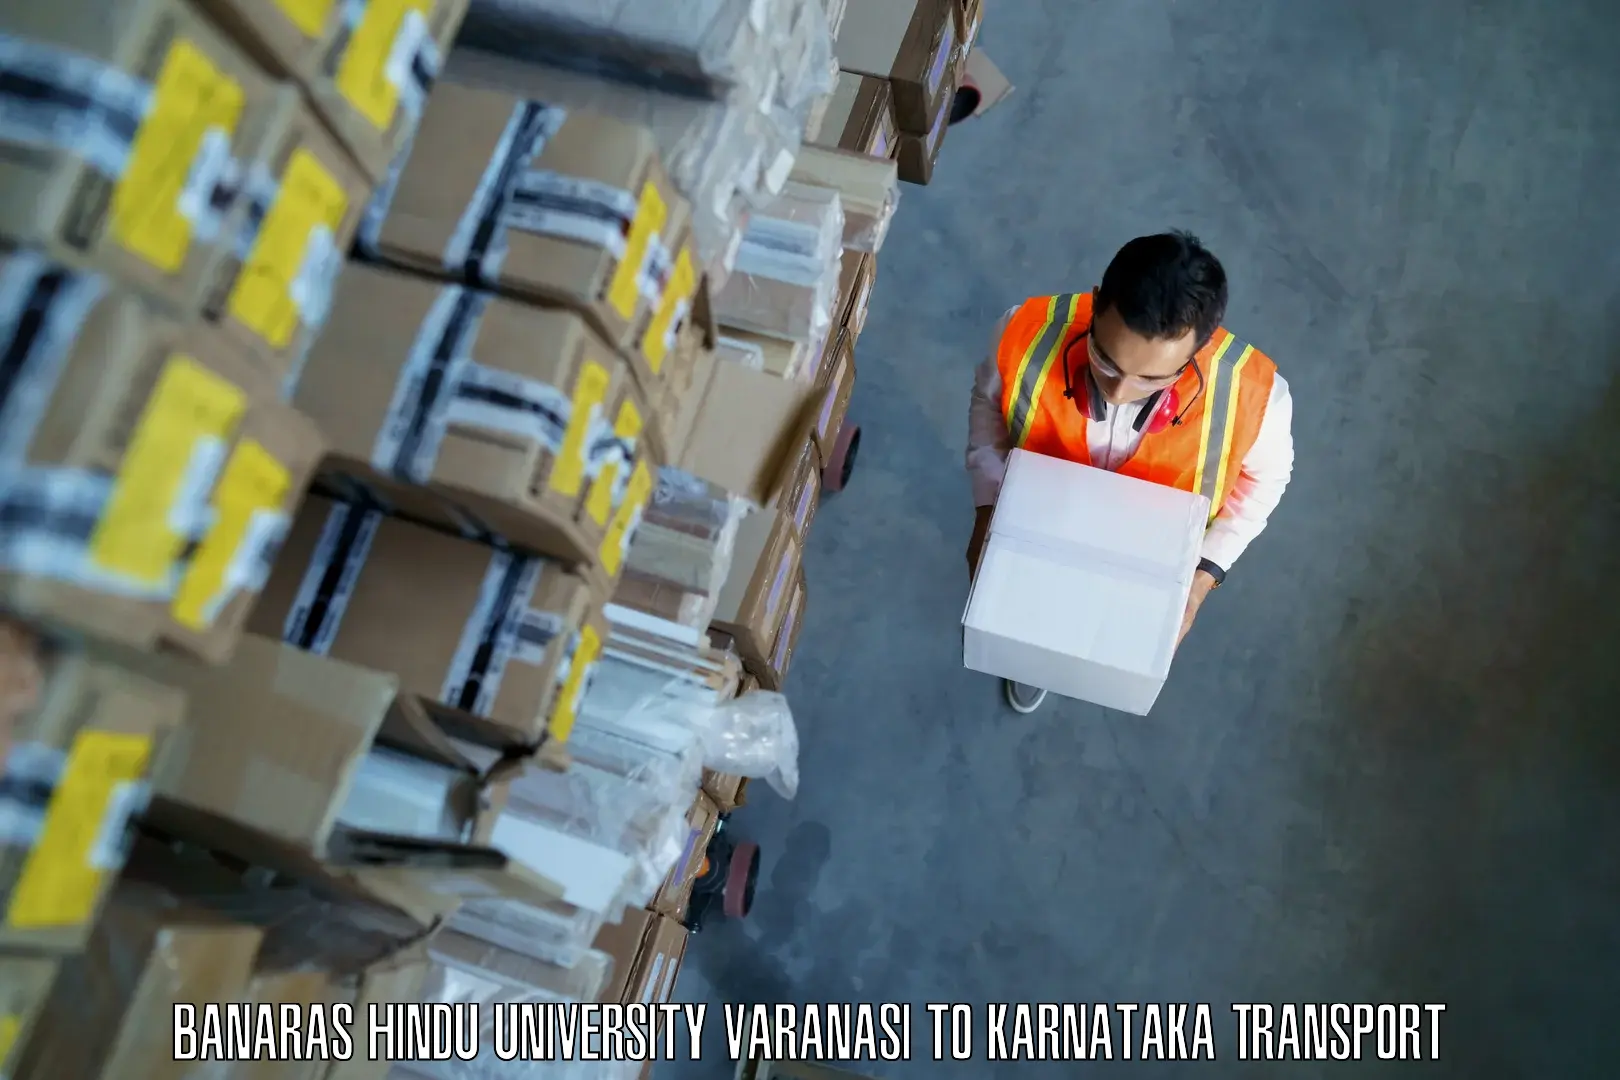 Package delivery services Banaras Hindu University Varanasi to Manvi